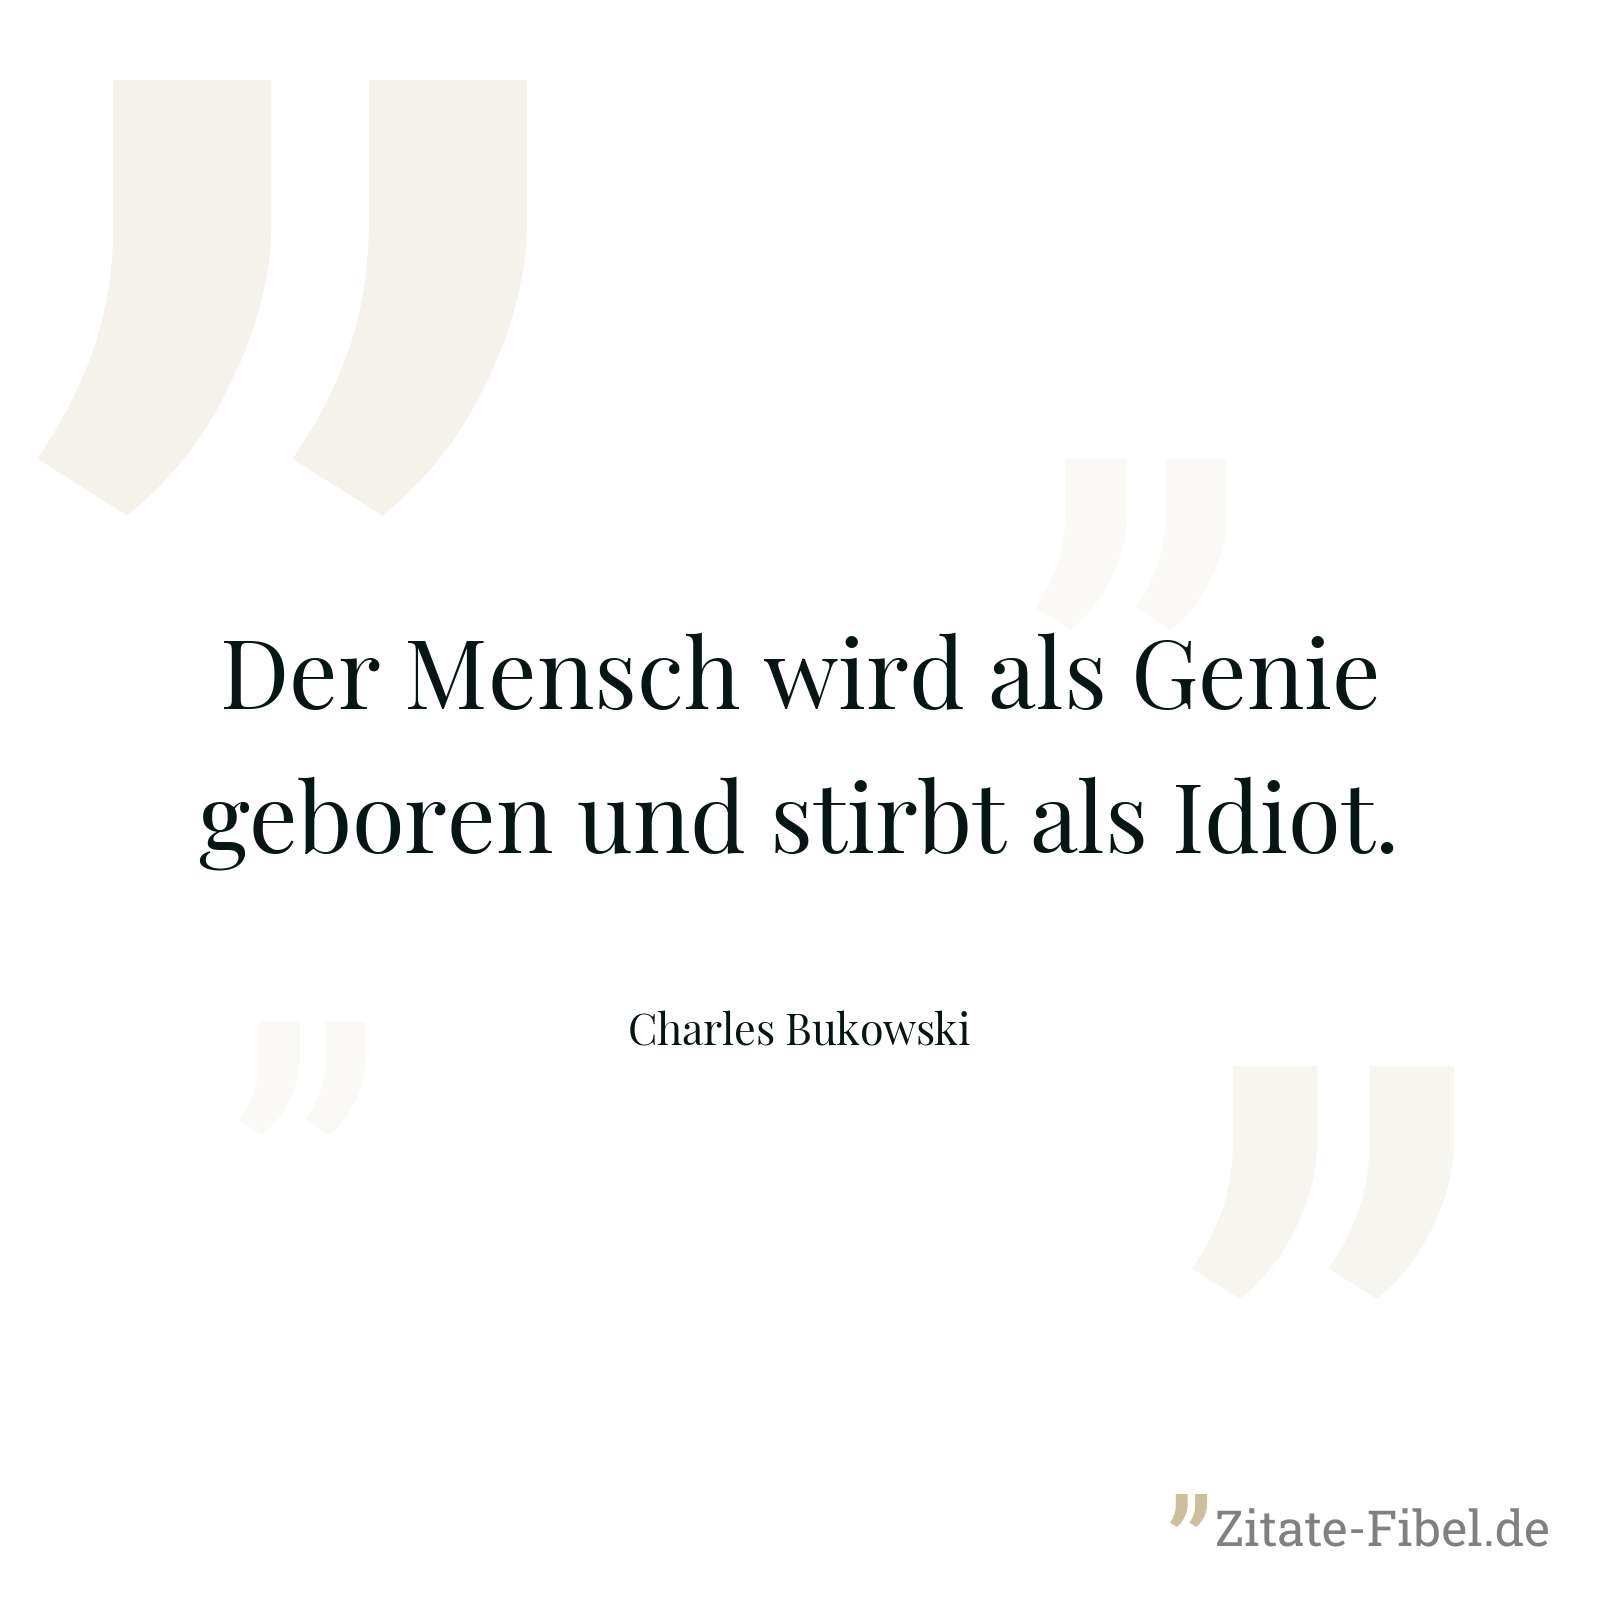 Der Mensch wird als Genie geboren und stirbt als Idiot. - Charles Bukowski